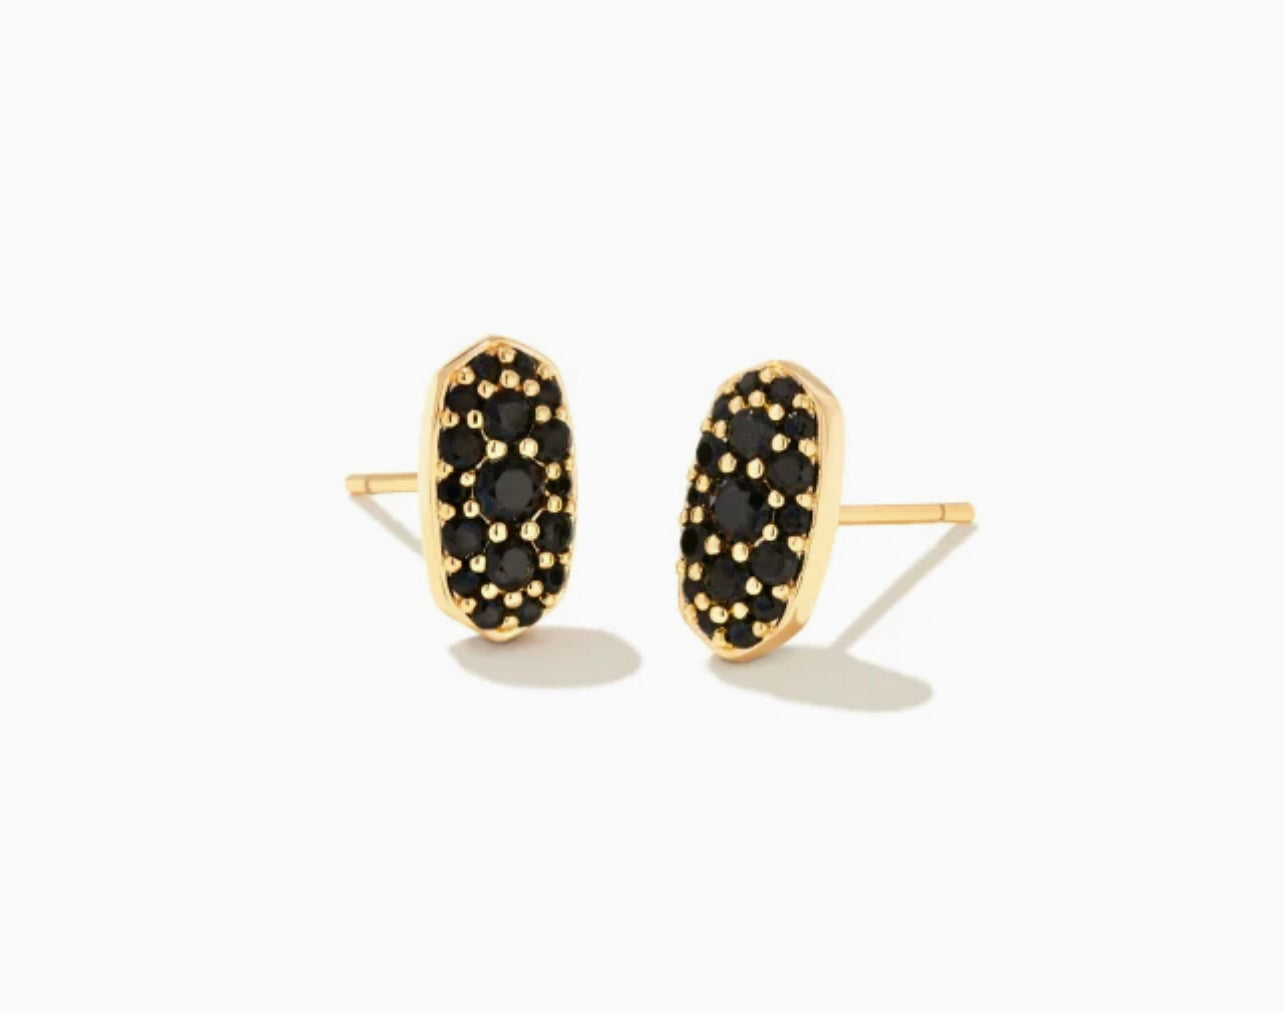 Kendra Scott-Grayson Gold Crystal Stud Earrings in Black Spinel 9608803049